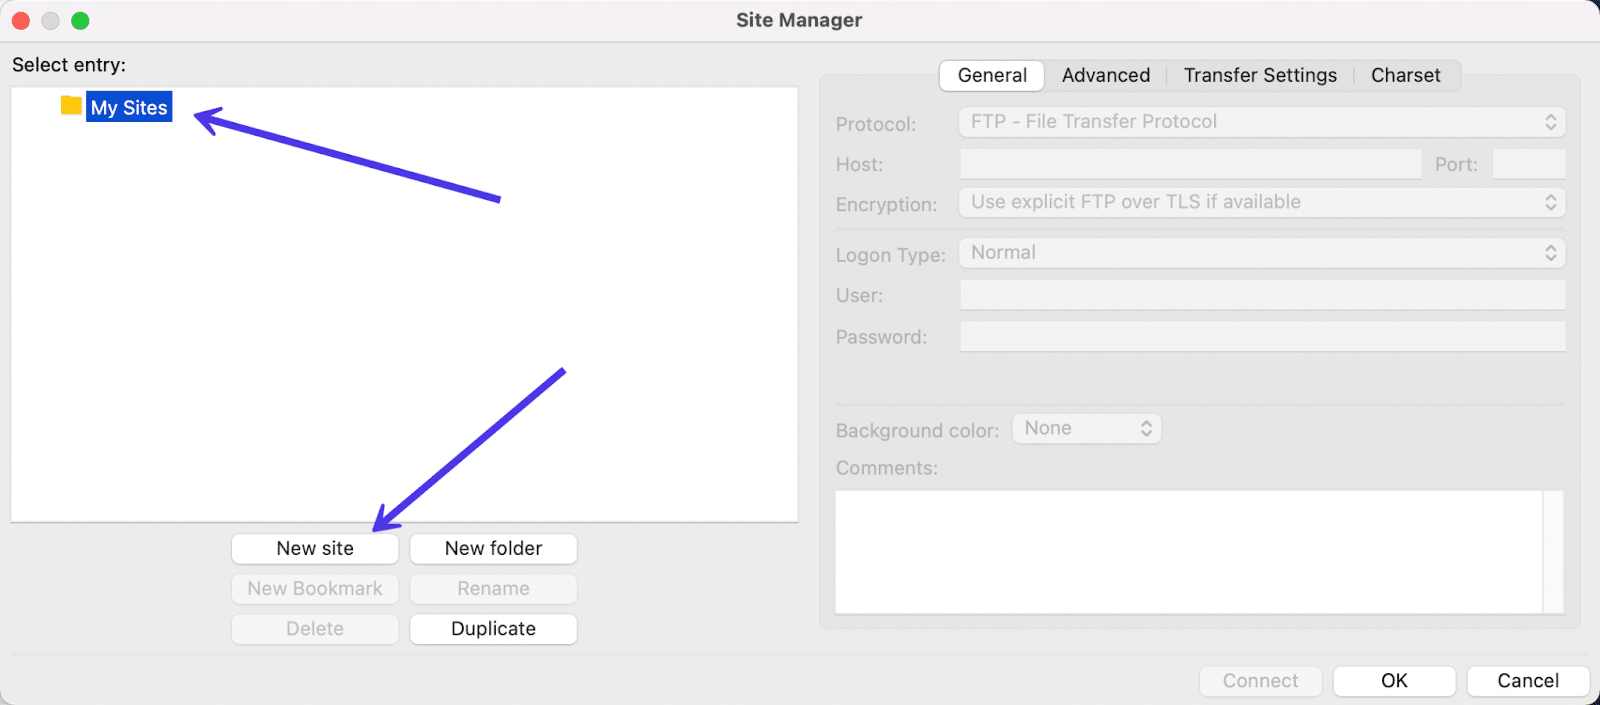 Schermata del Site Manager dove nell’area Select Entry si trova la cartella My Sites. Una freccia indica il pulsante New Site su cui fare clic.